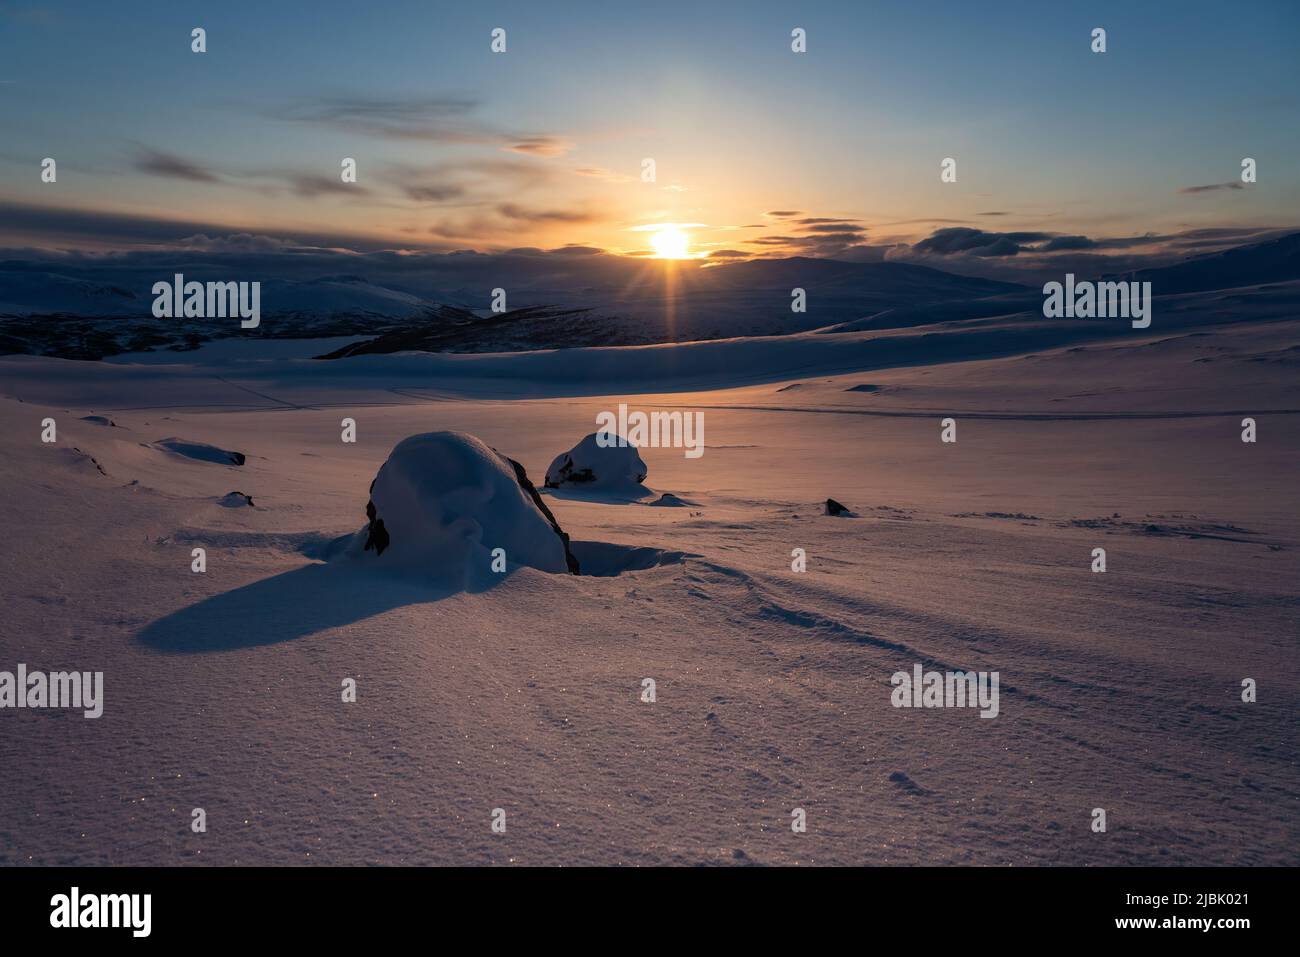 Coucher de soleil, lumière dorée sur les montagnes hivernales enneigées norvégiennes. Joesjo, Suède Banque D'Images